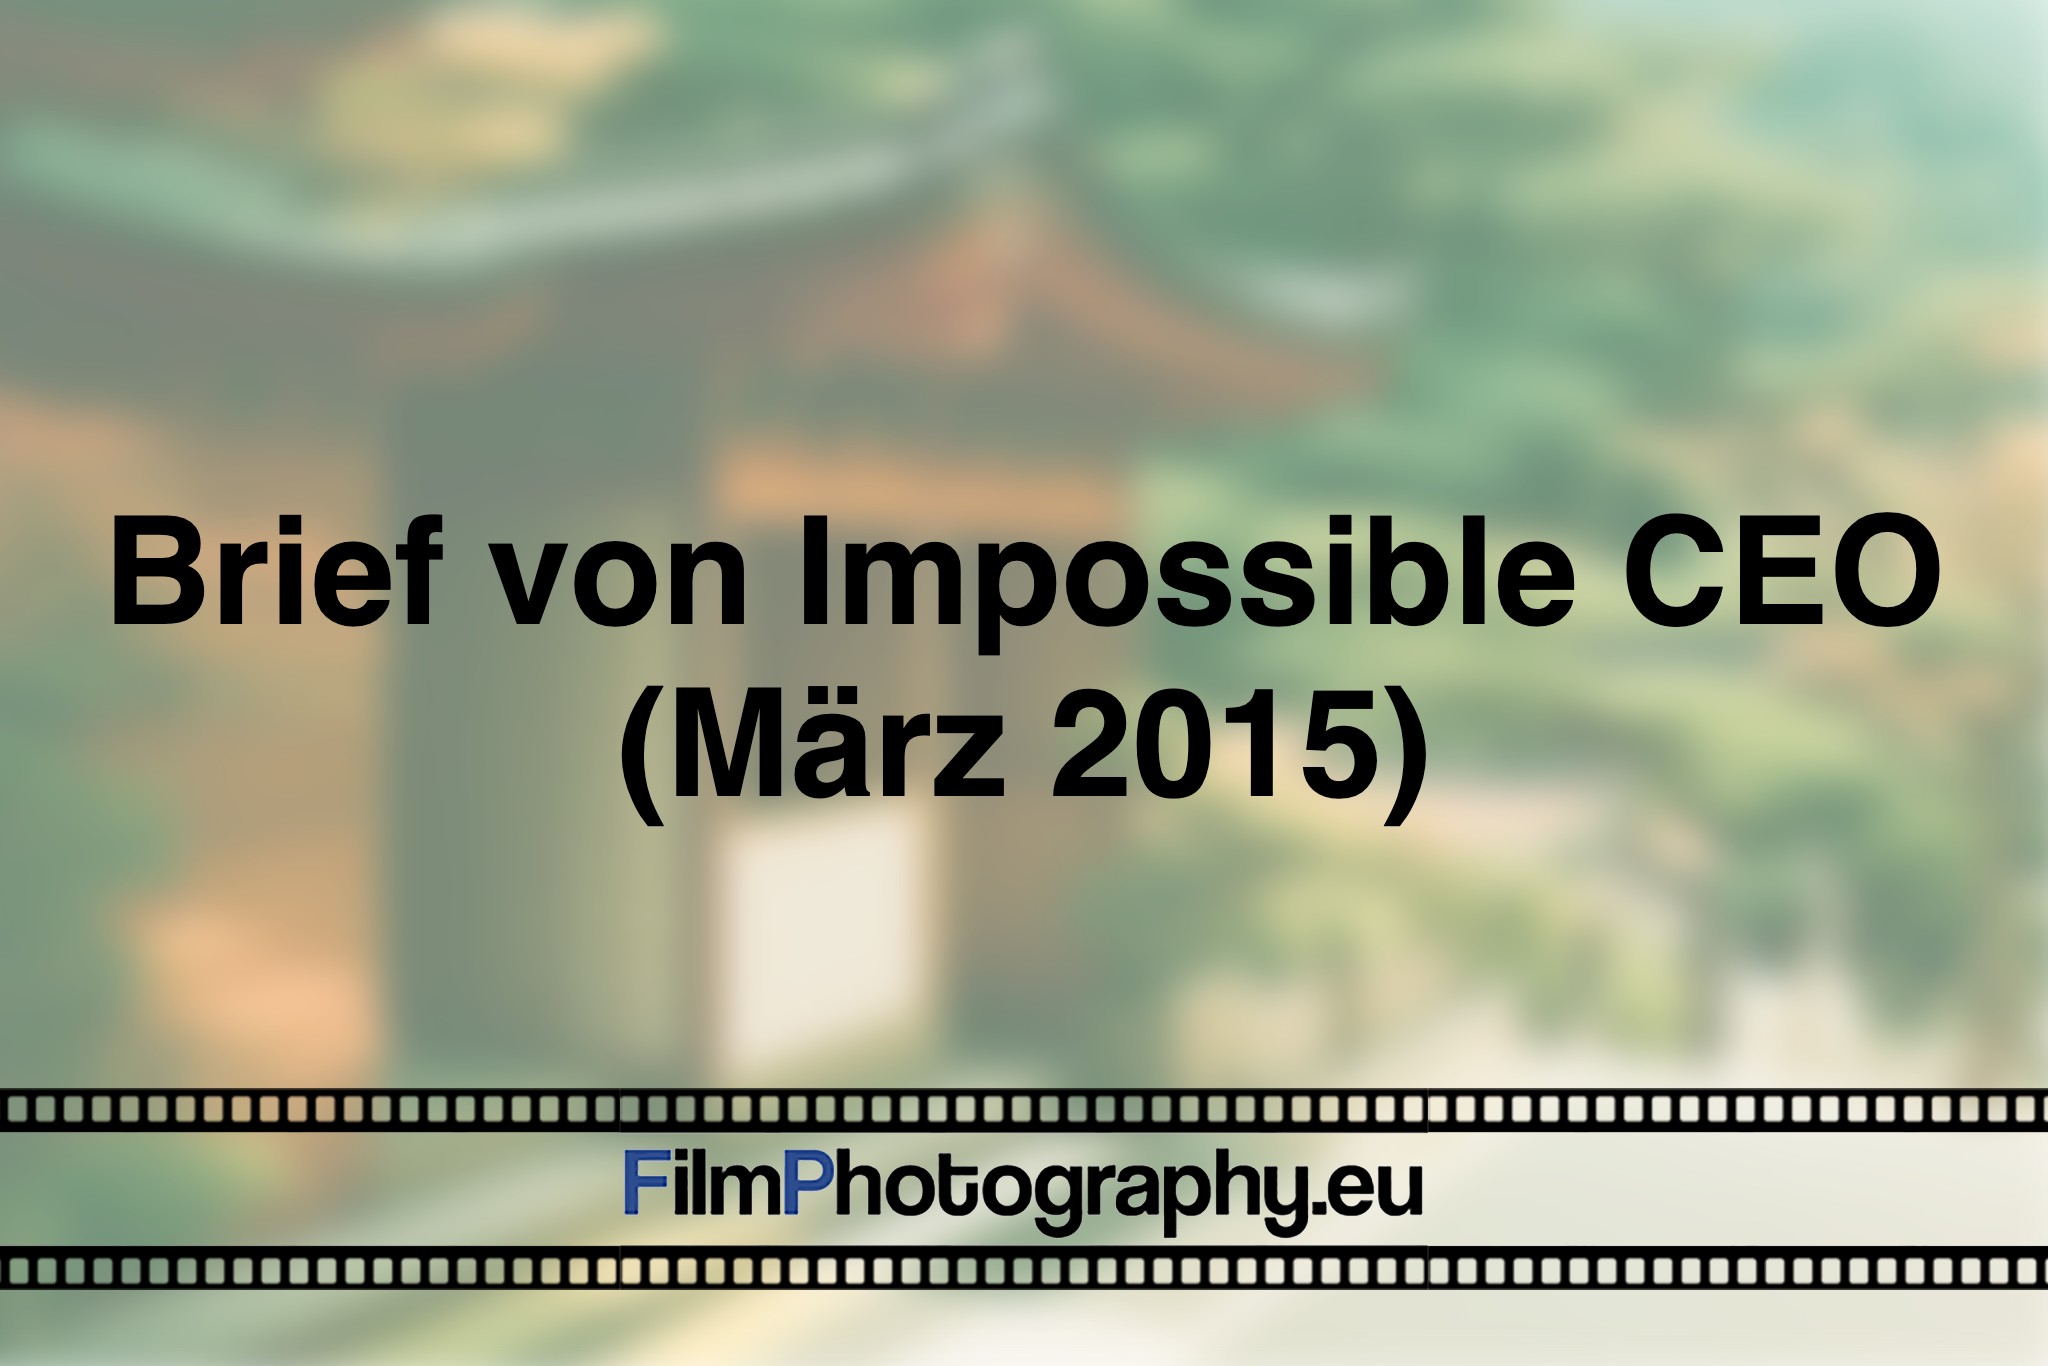 brief-von-impossible-ceo-maerz-2015-photo-bnv